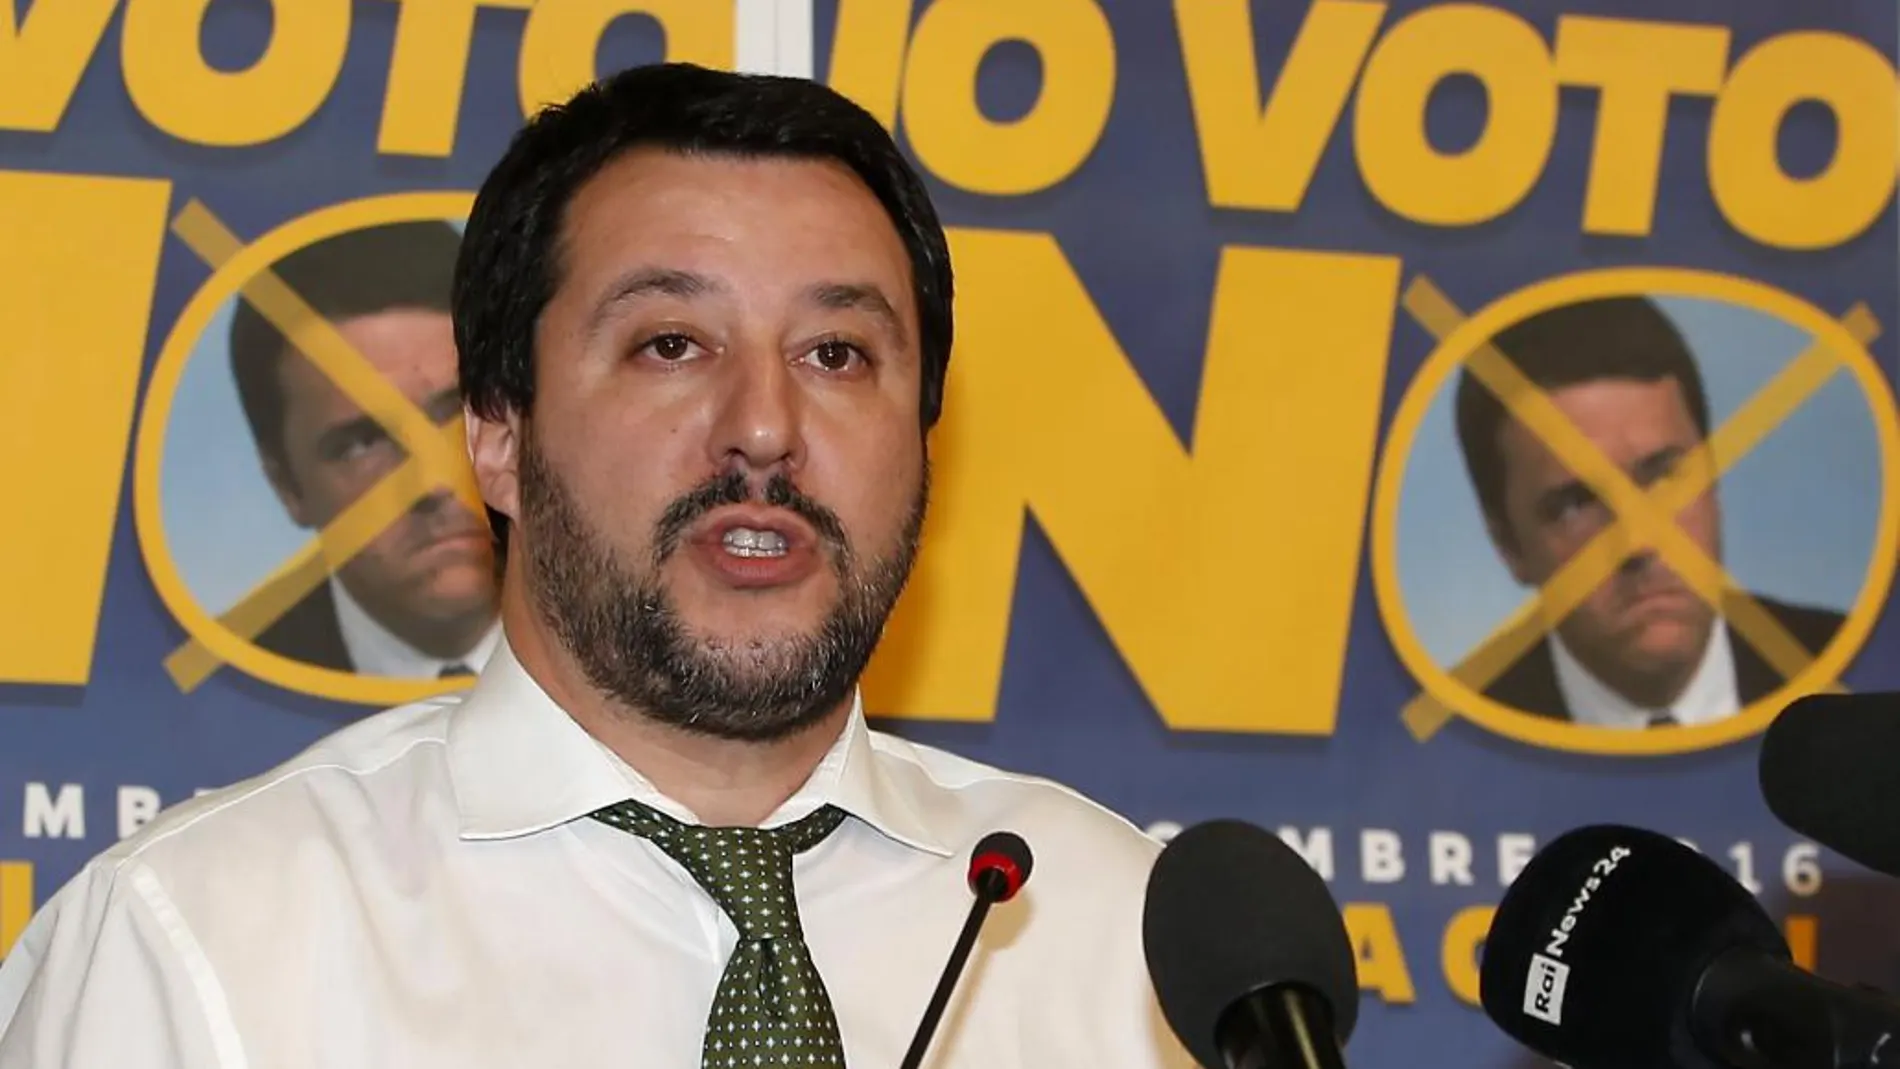 El líder de la Liga Norte, Matteo Salvini, en la sede del partido en Milán